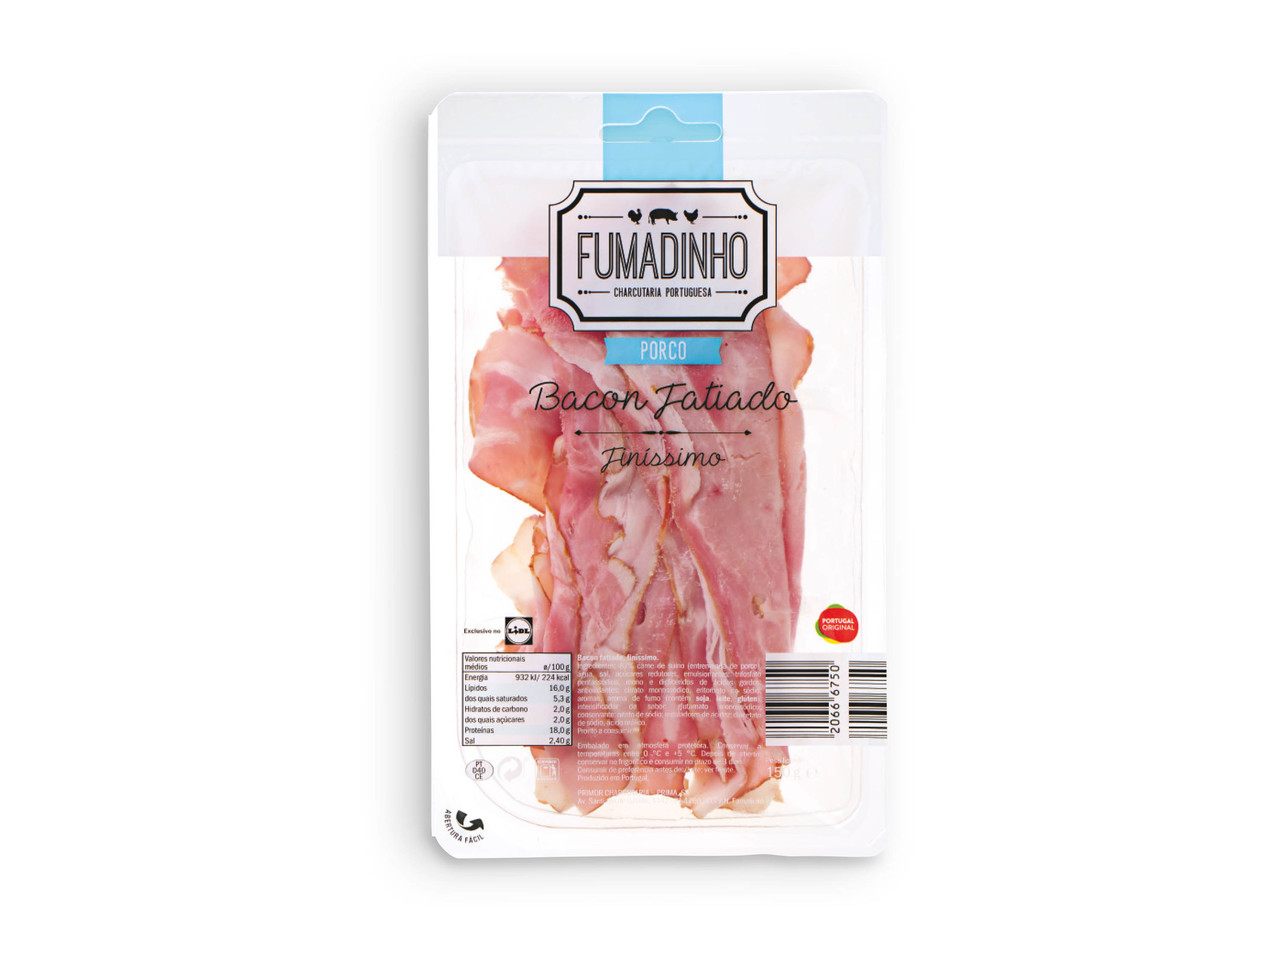 FUMADINHO(R) Bacon Fatiado Finíssimo / Alho